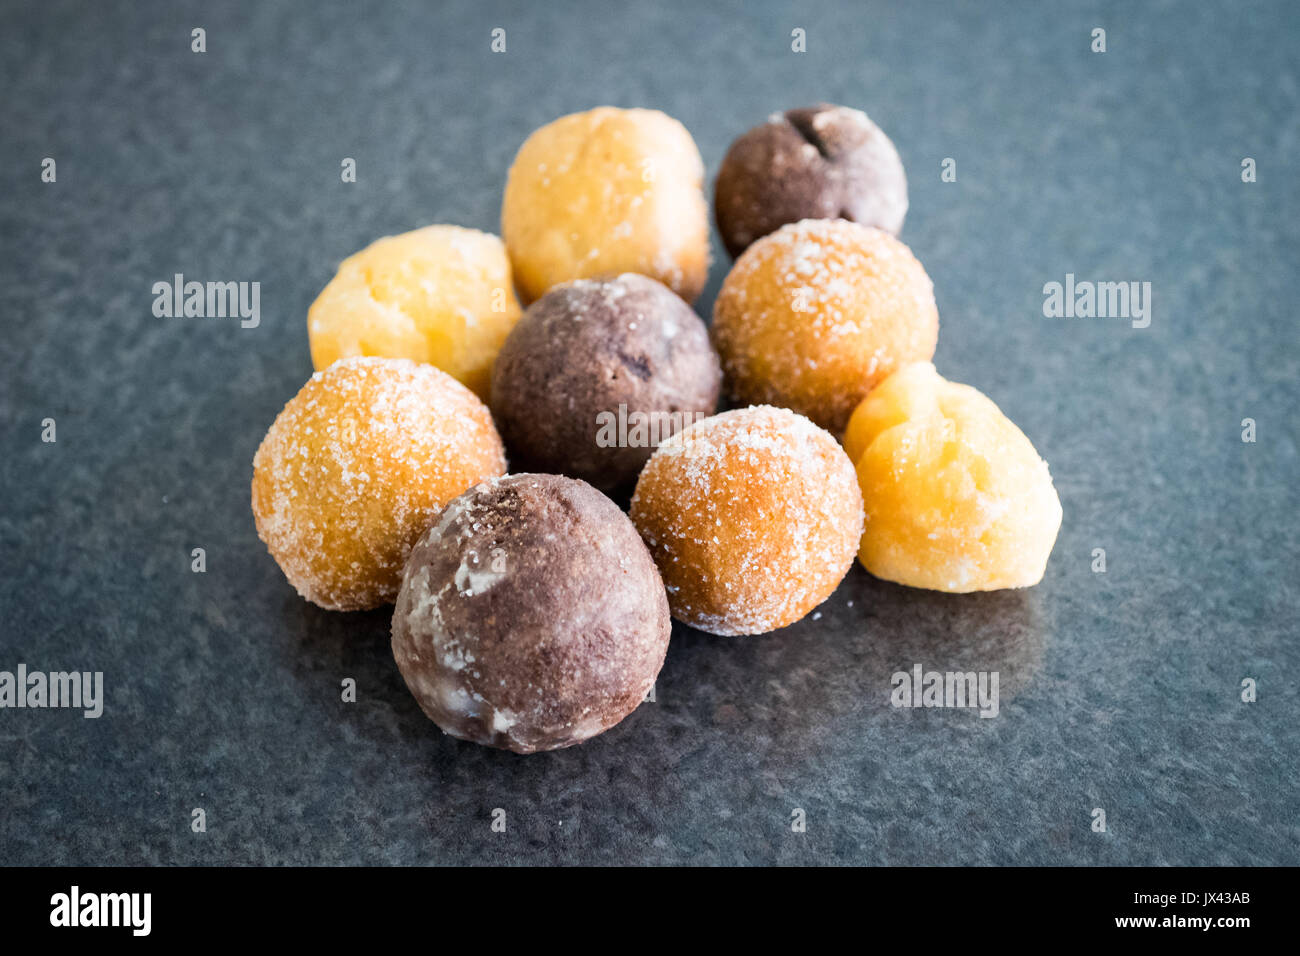 Timbits (fori di ciambella, donut fori) da Tim Hortons, un canadese popolare ristorante fast food chain. Foto Stock